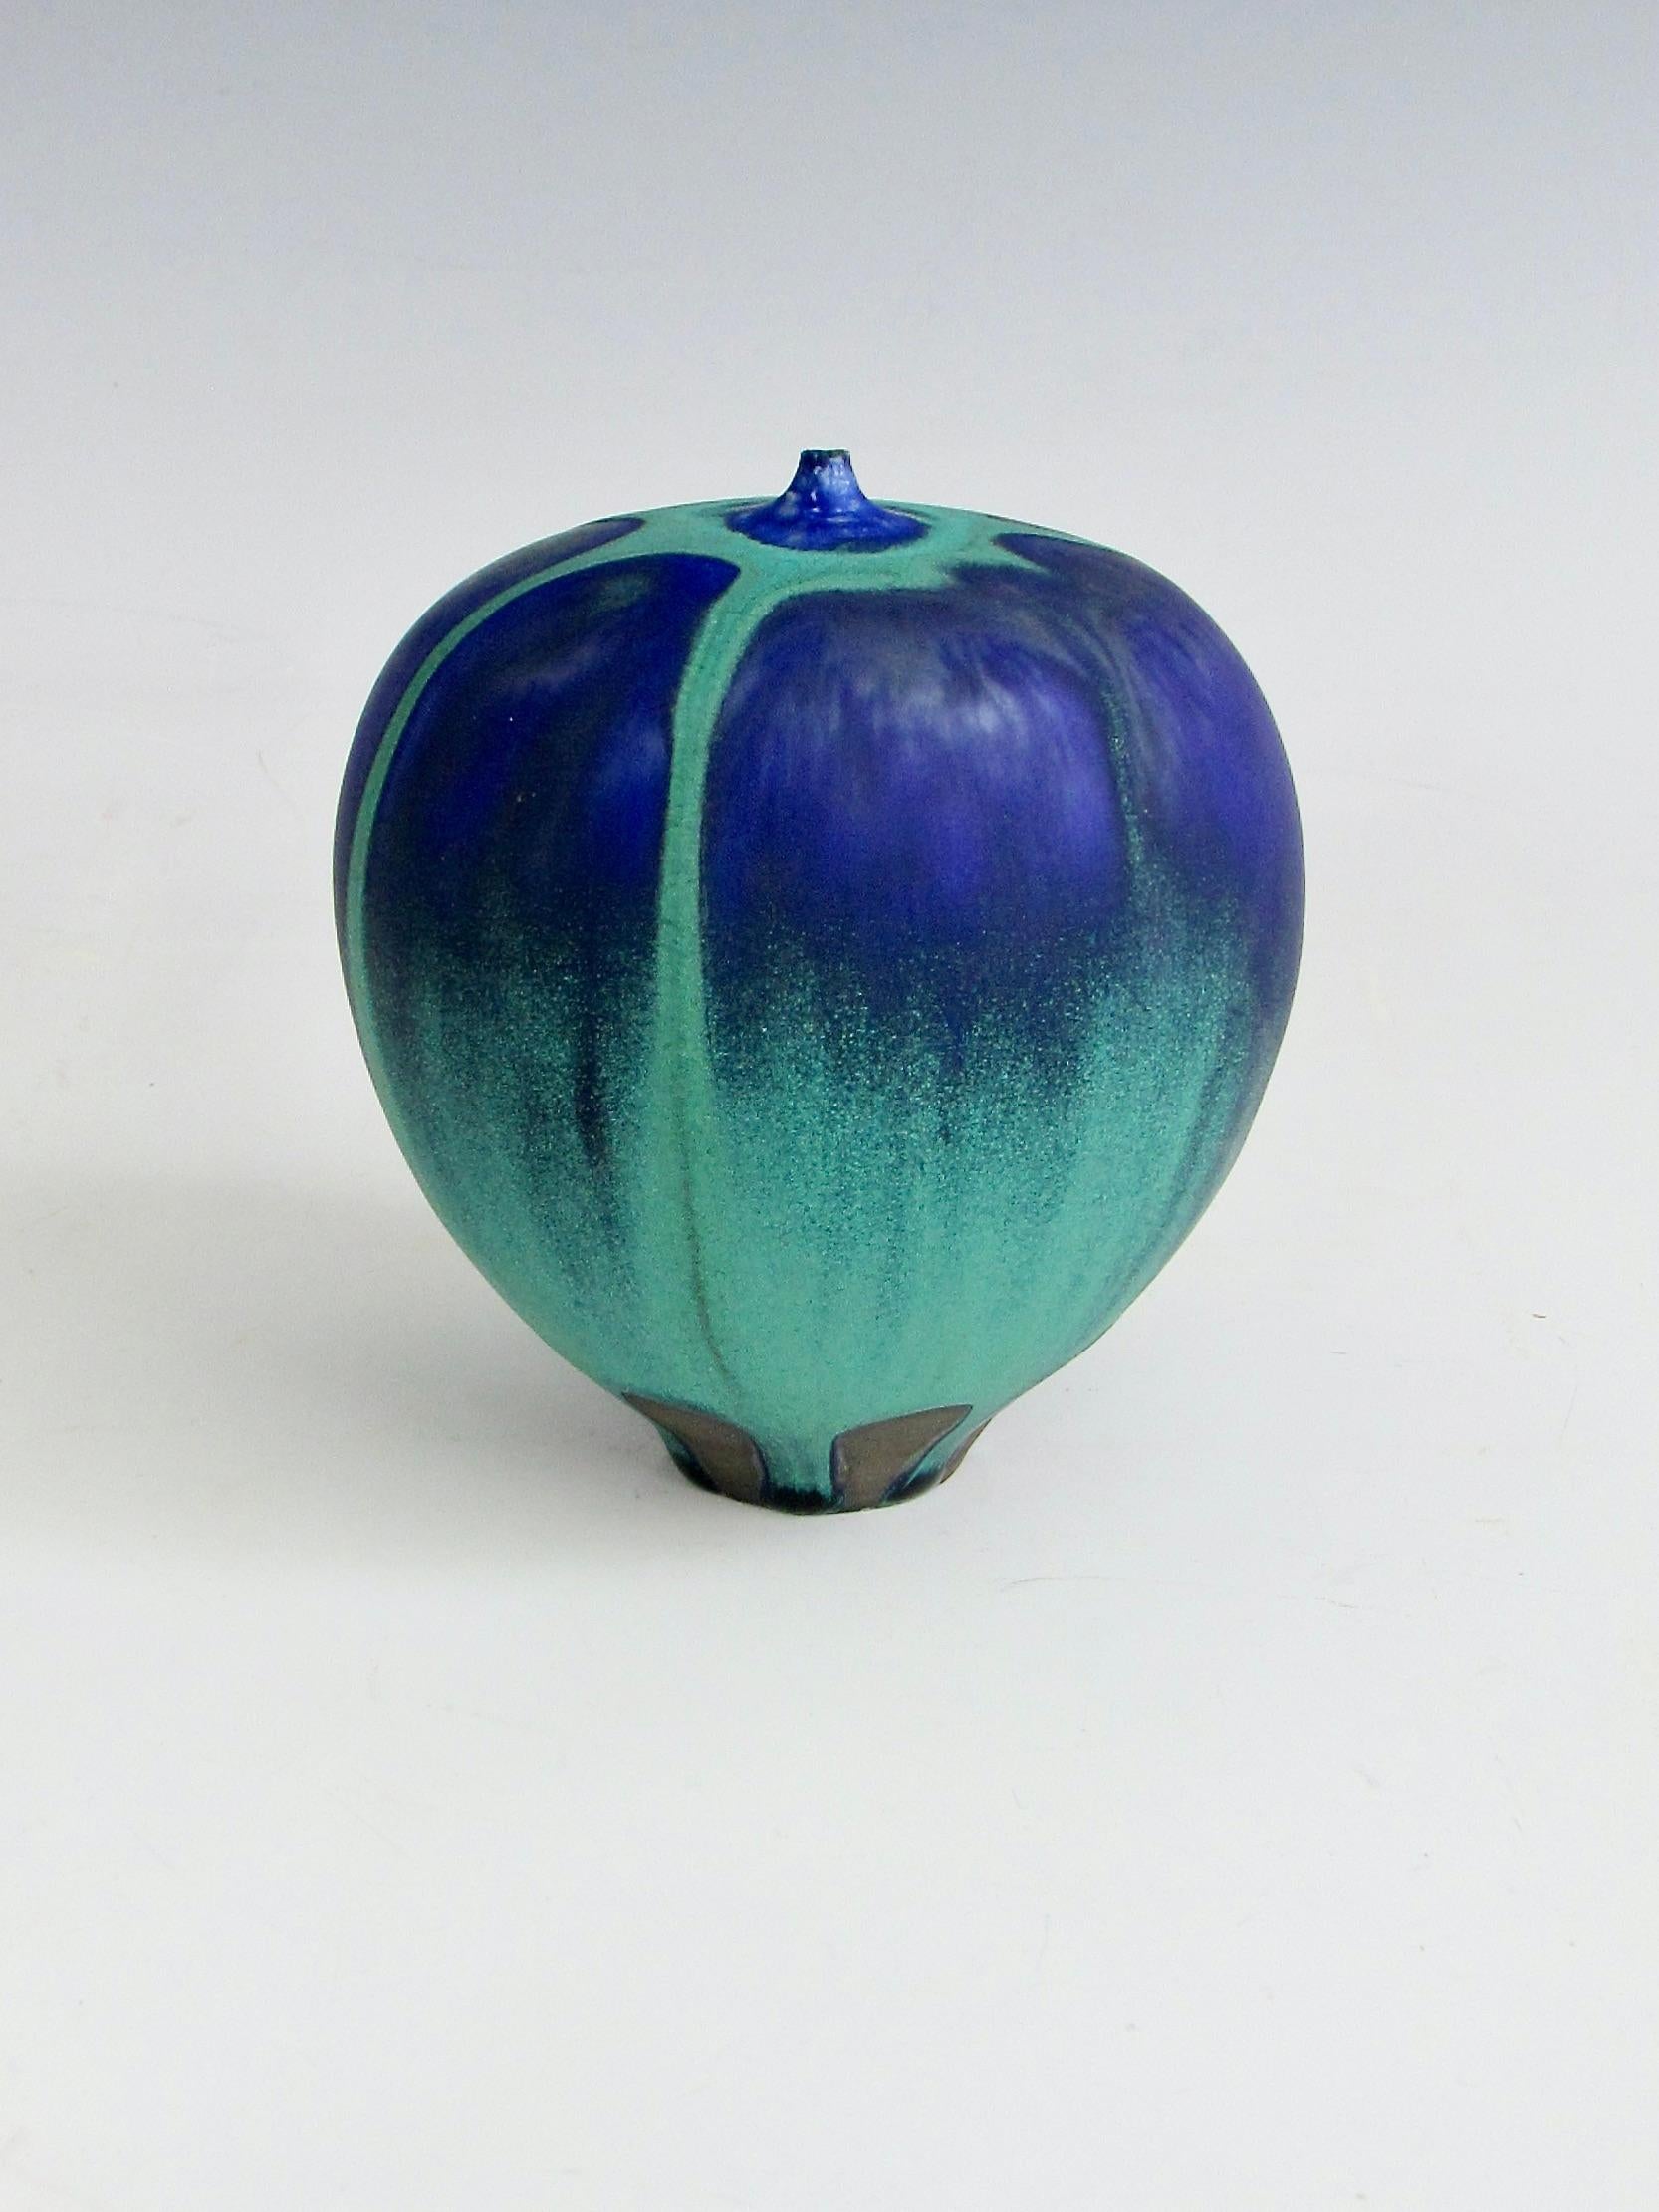 Feelie Vase signiert Cabat auf der Unterseite. Seafoam oder Ozean grün satinierte matte Glasur über tiefblau vielleicht Indigo Glasur auch matte Oberfläche . Die Überlagerung von Grün und Blau erinnert an einen Heißluftballon. 
 Rose Cabat